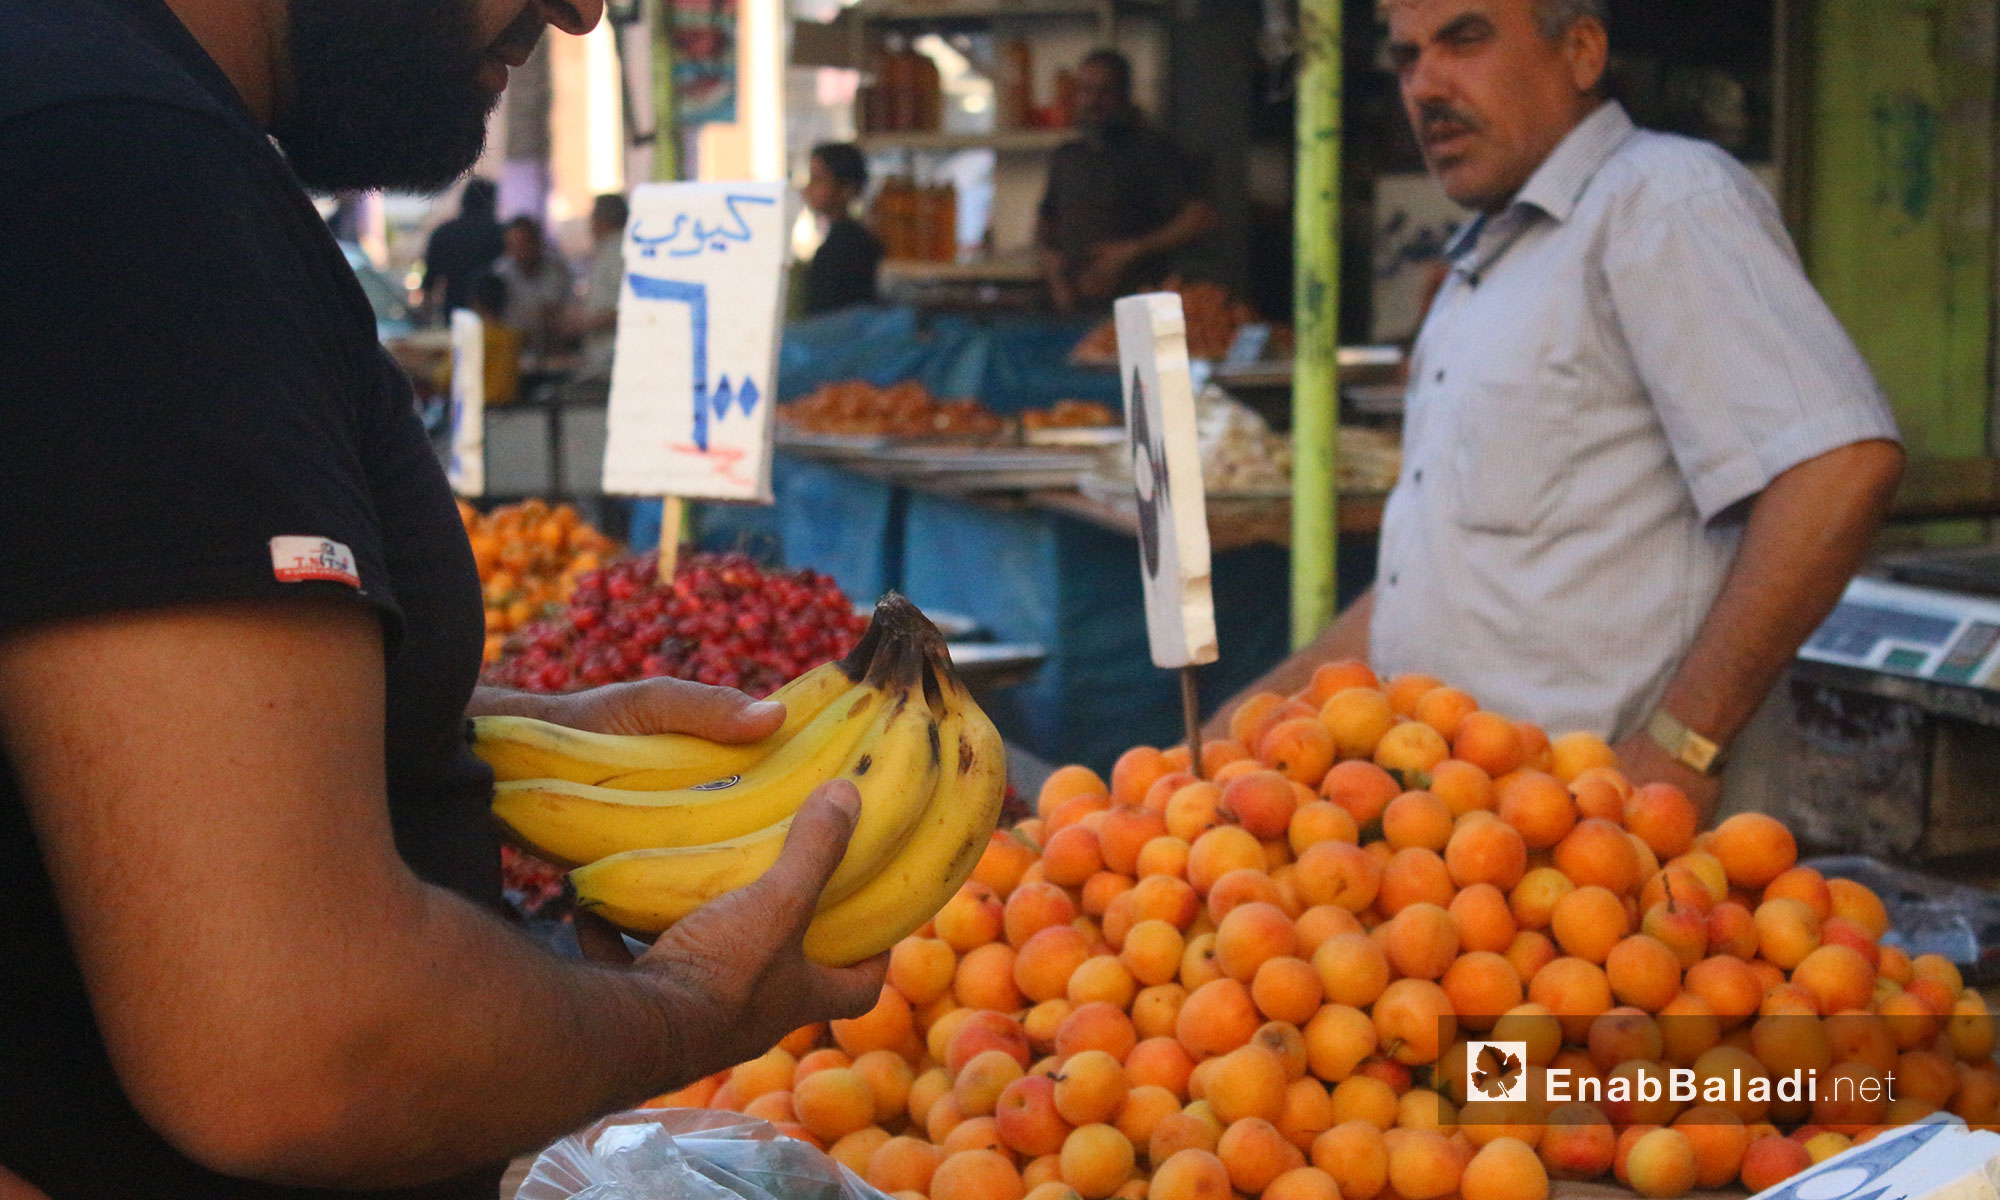 أحد الزبائن يتسوق الفاكهة في سوق مدينة إدلب أول أيام شهر رمضان المبارك - 27 أيار 2017 (عنب بلدي)